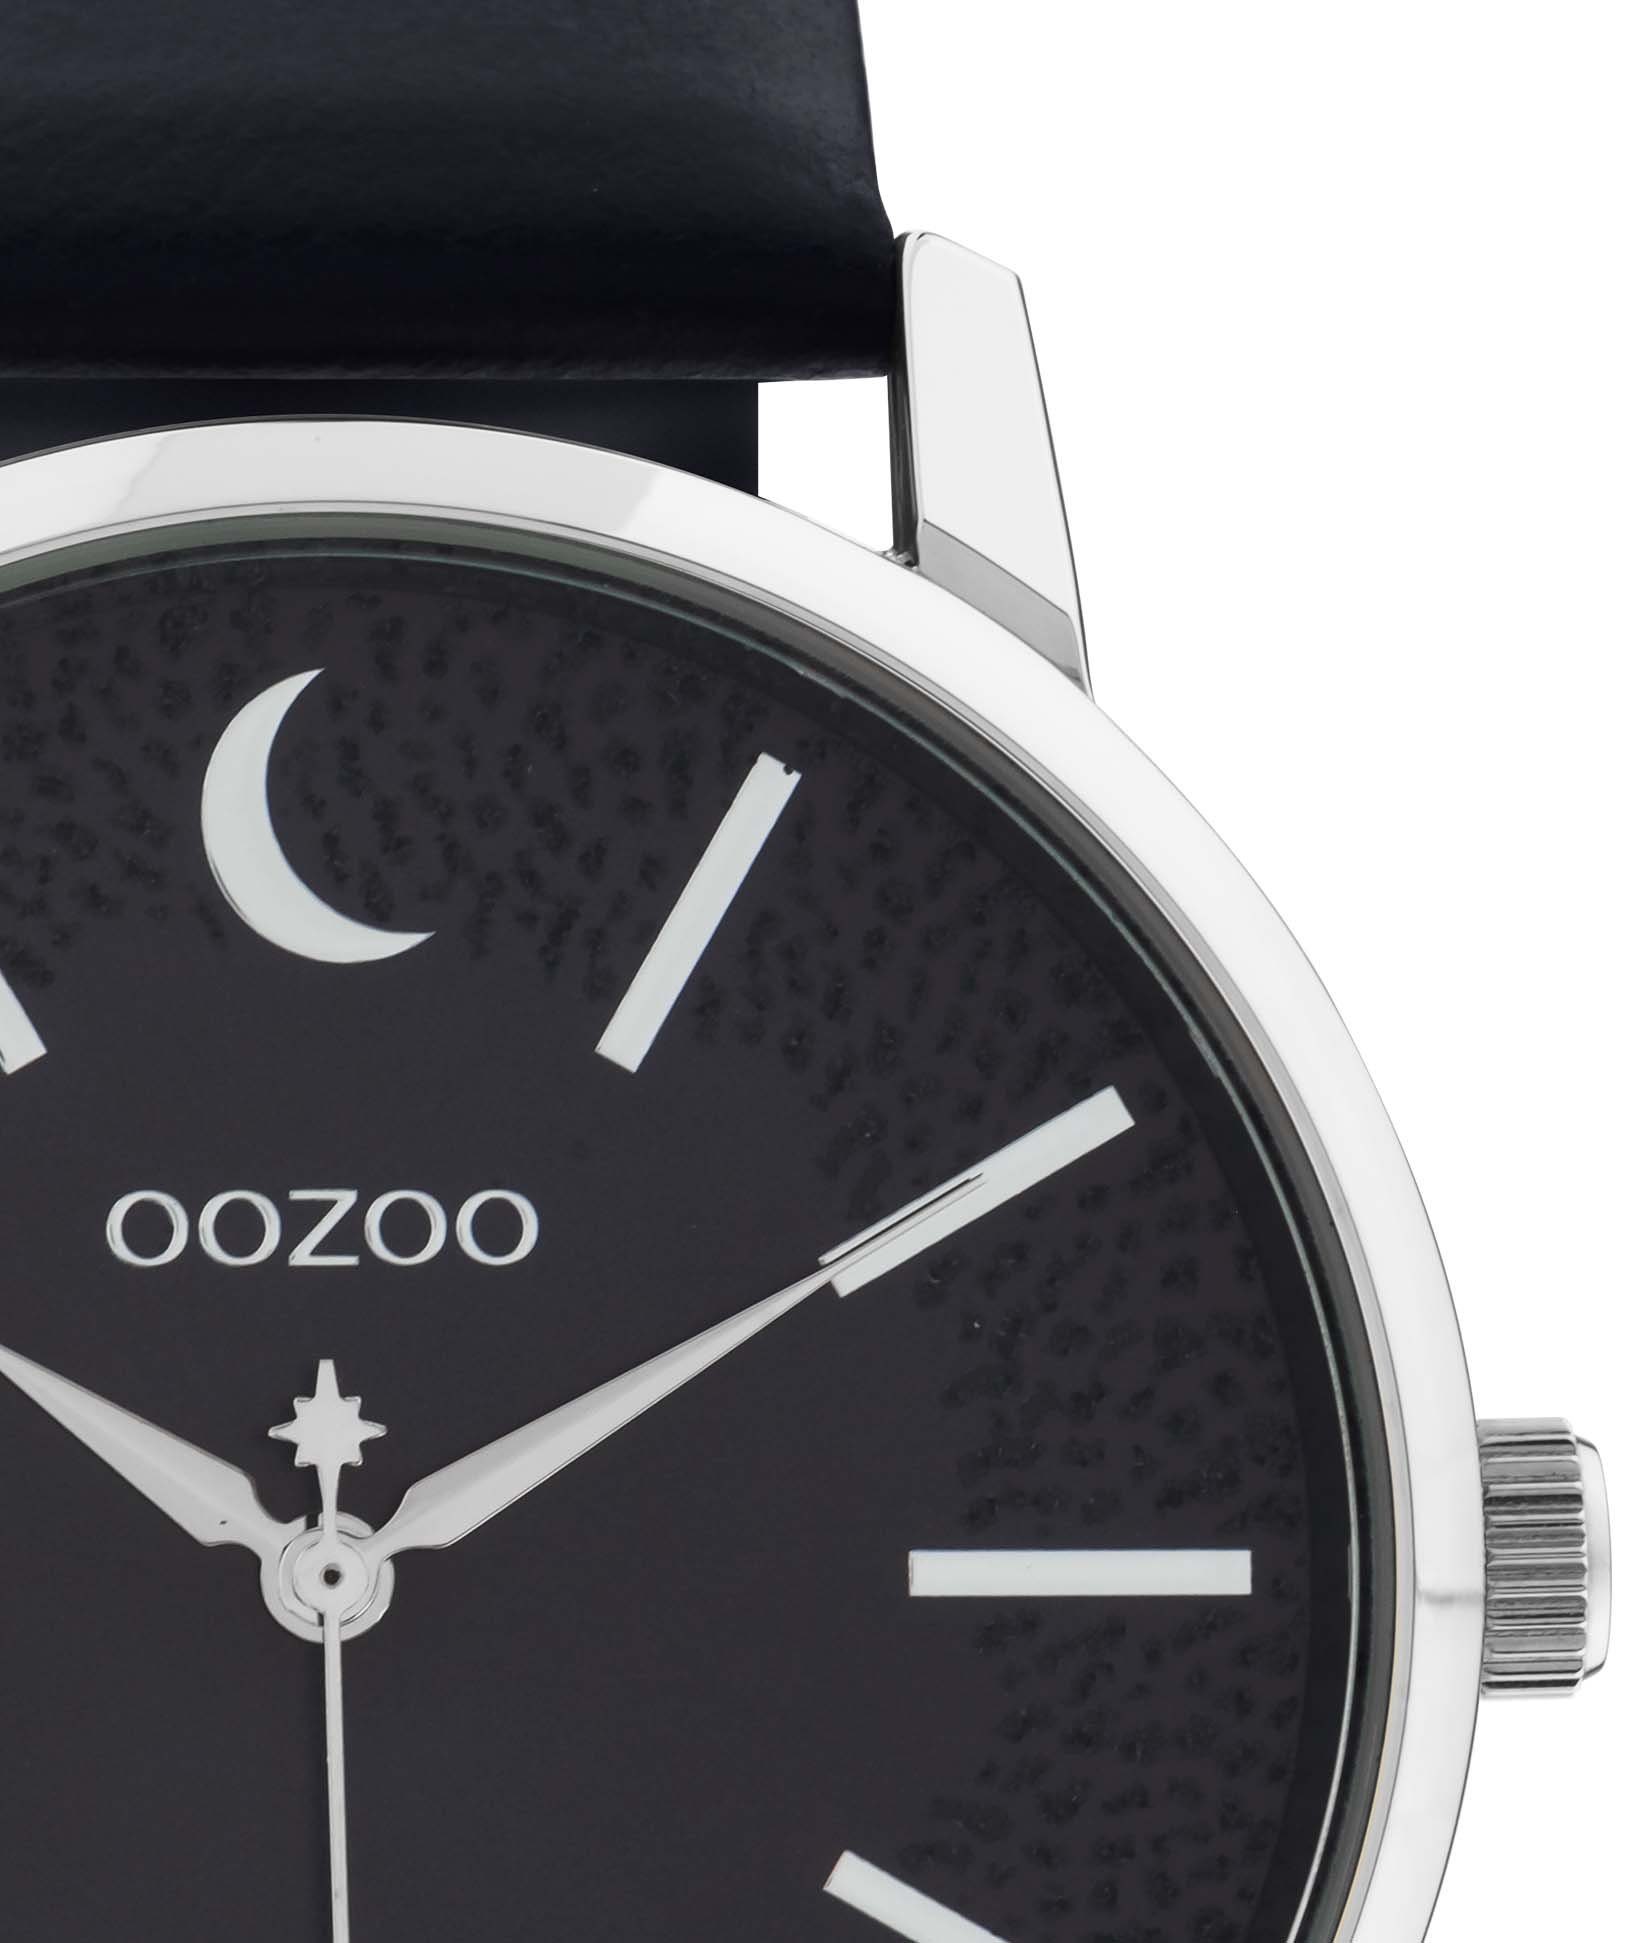 OOZOO C11043 Quarzuhr